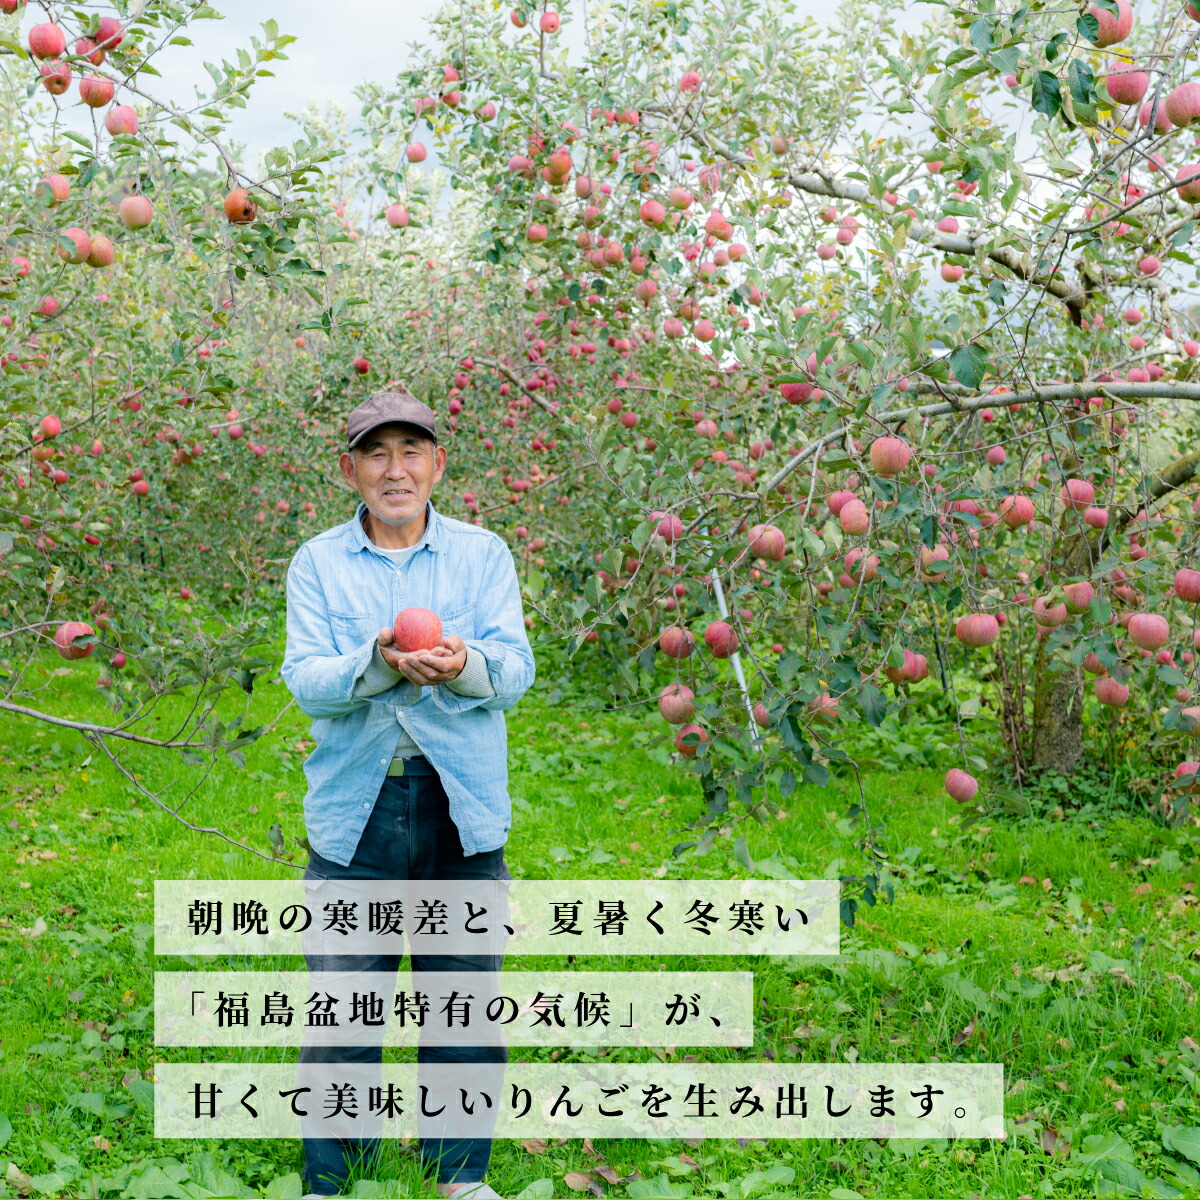 りんご サンふじ 秀 5kg 12~16玉 福島県産 特長8